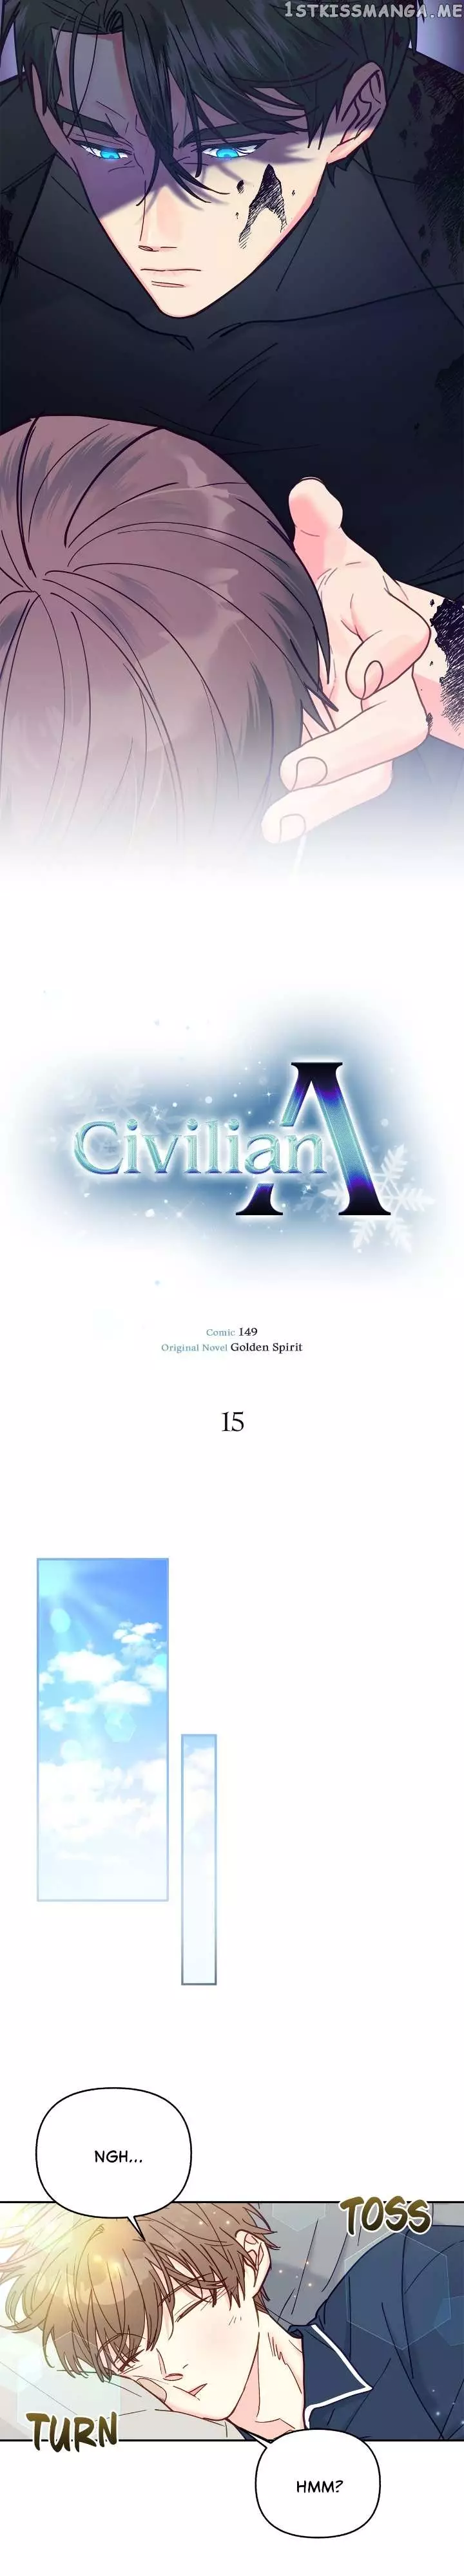 Civilian A - 15 page 18-34f61a3d